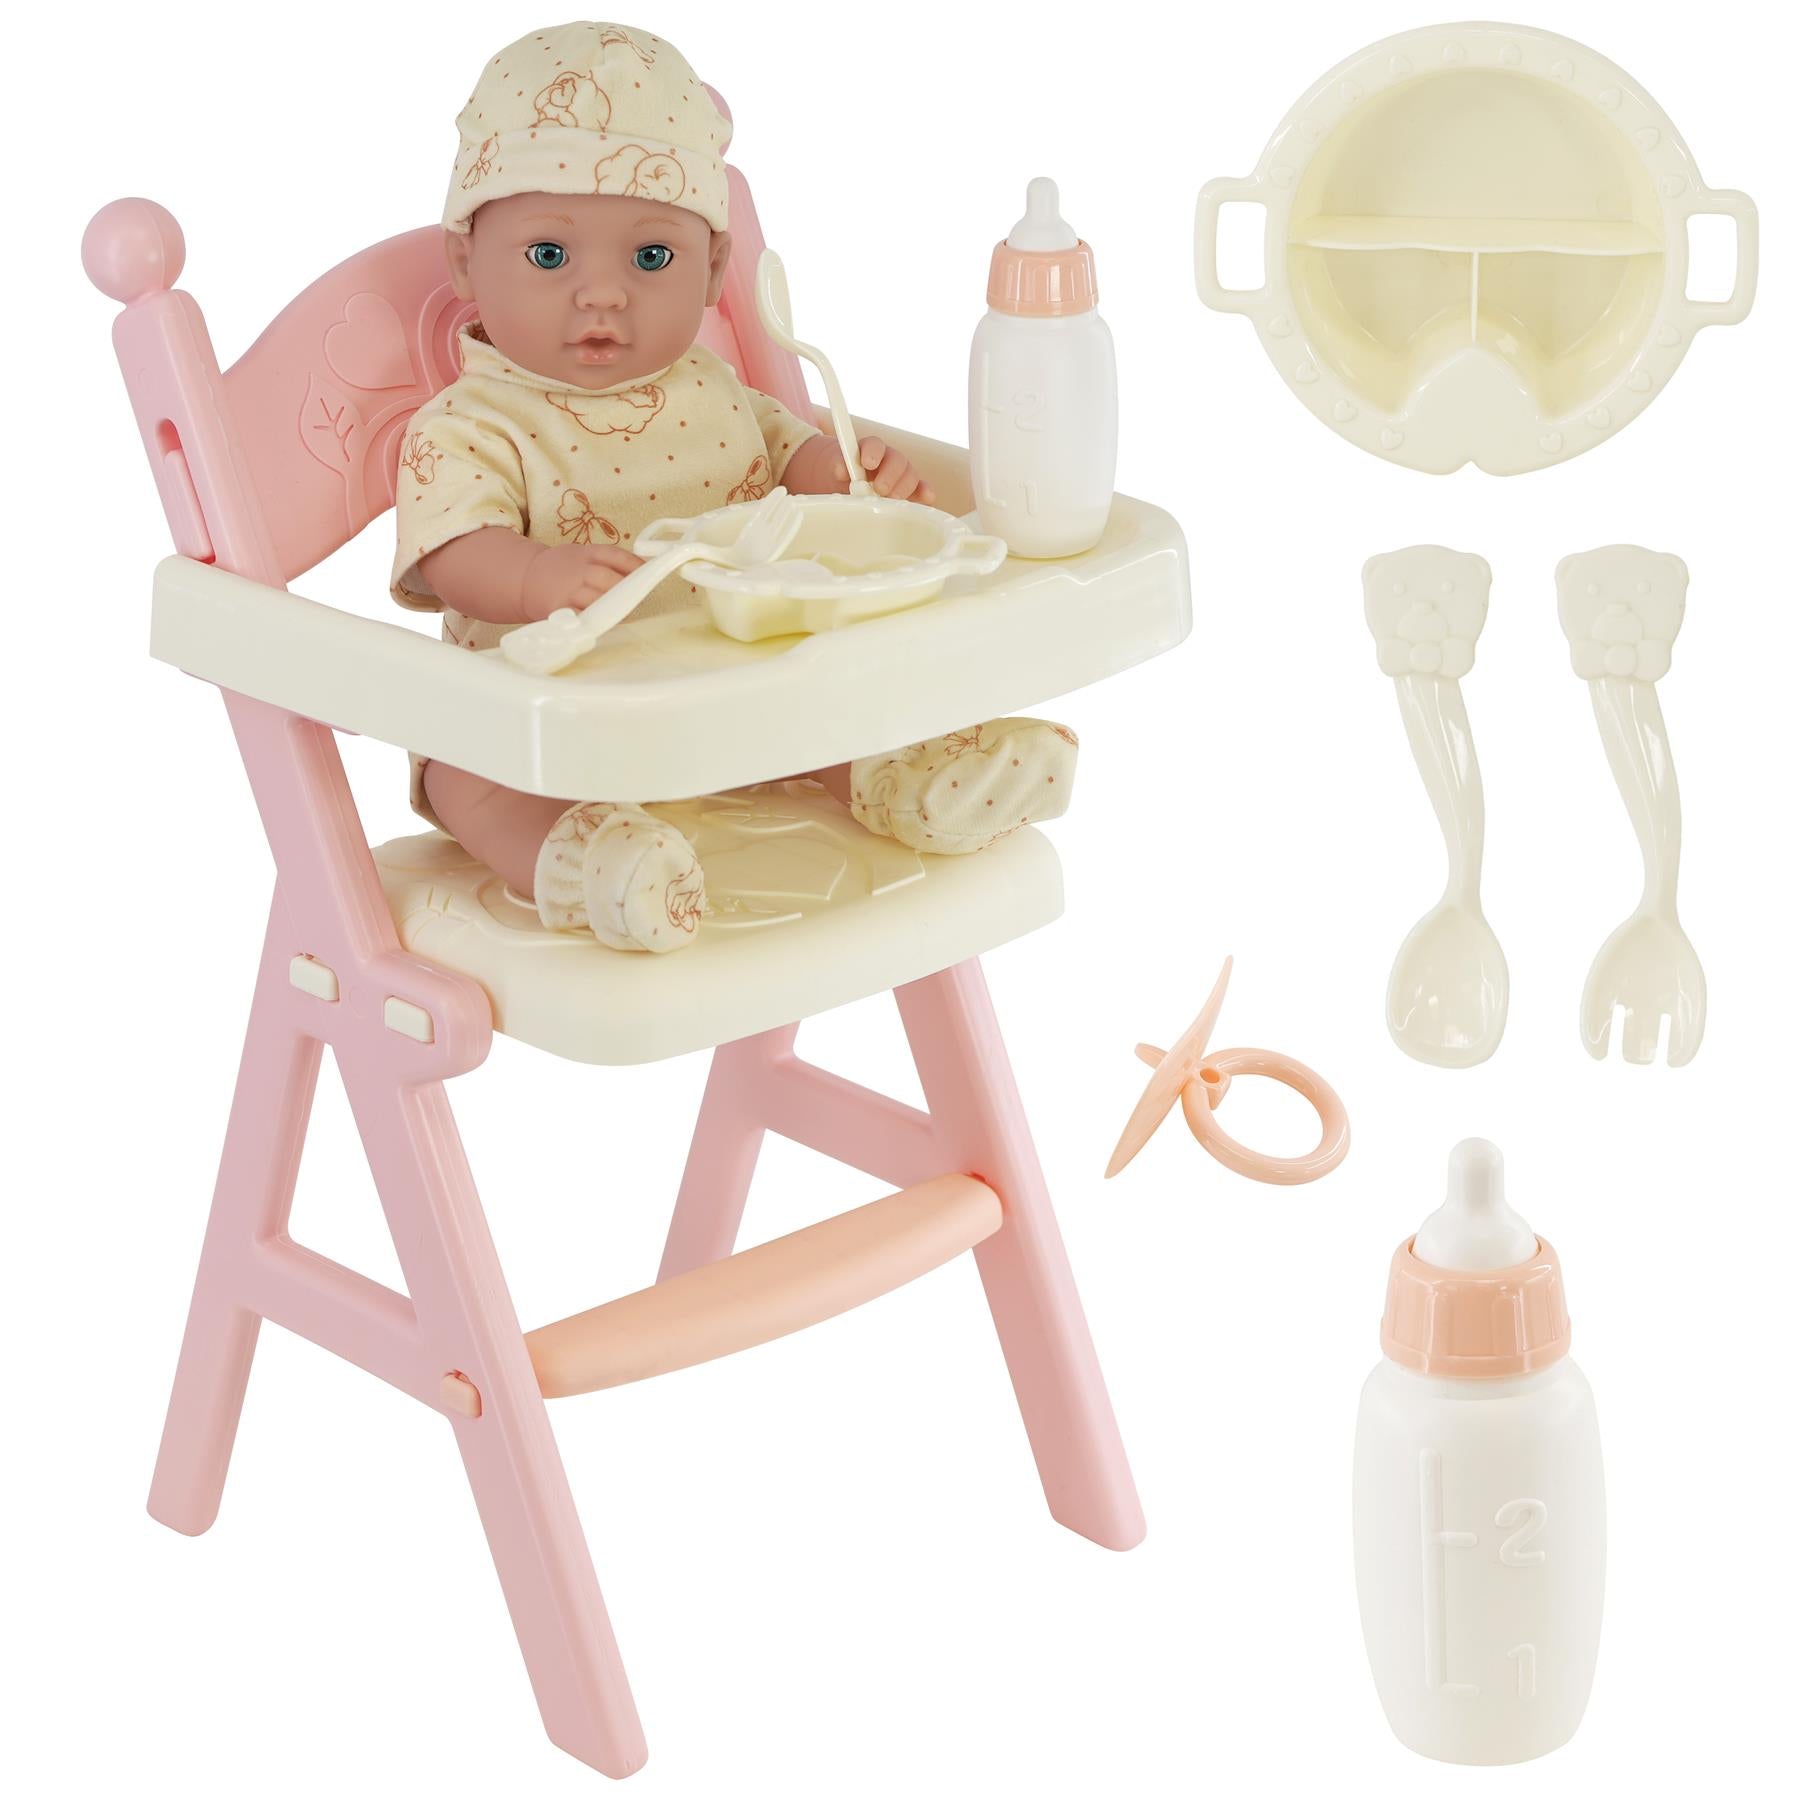 BiBi Doll Baby Doll with High Feeding Chair and Accessories Baby Doll with Feeding High Chair & Accessories